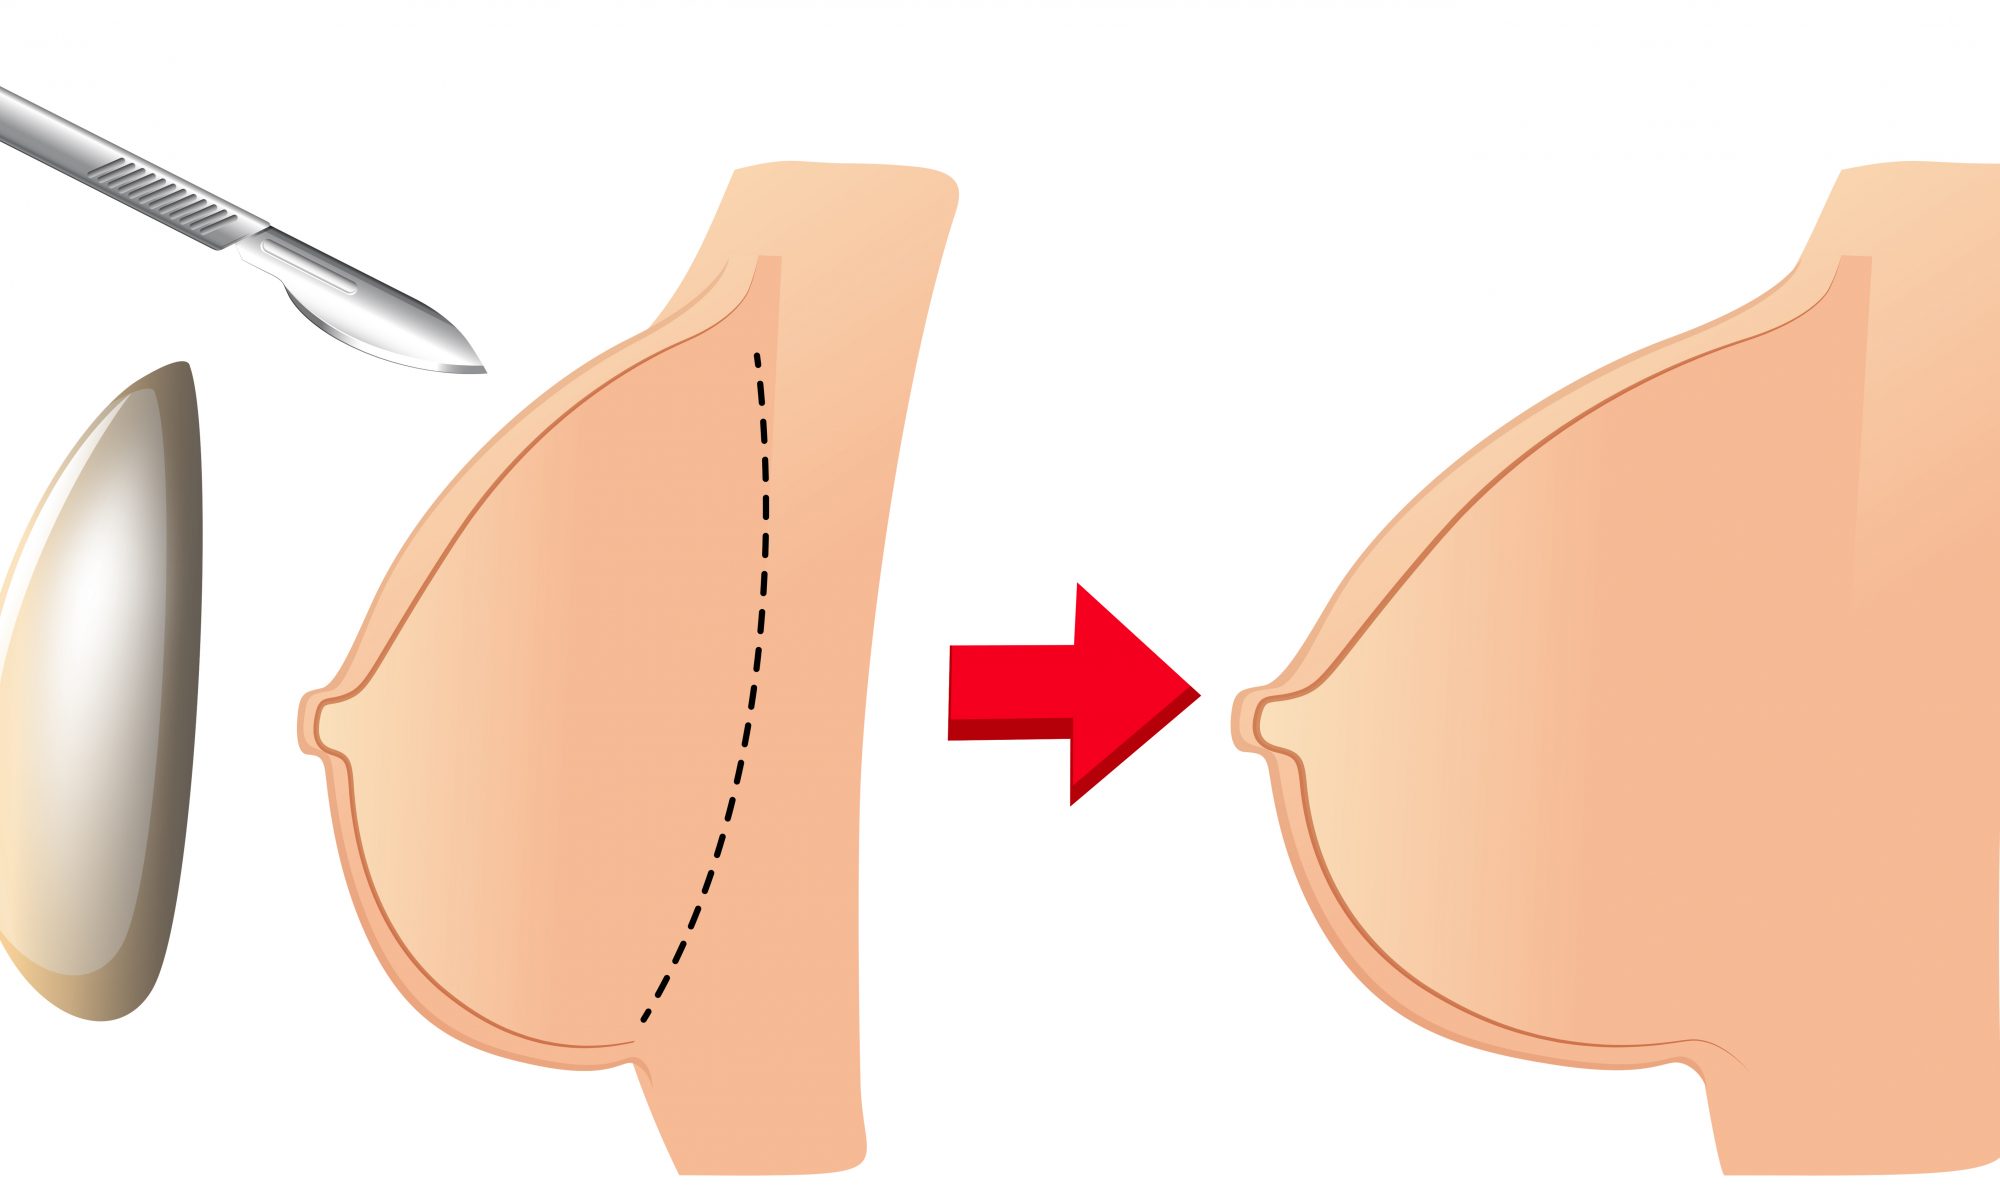 Ci sono alcune cose importanti da sapere prima di considerare un intervento di chirurgia estetica al seno.